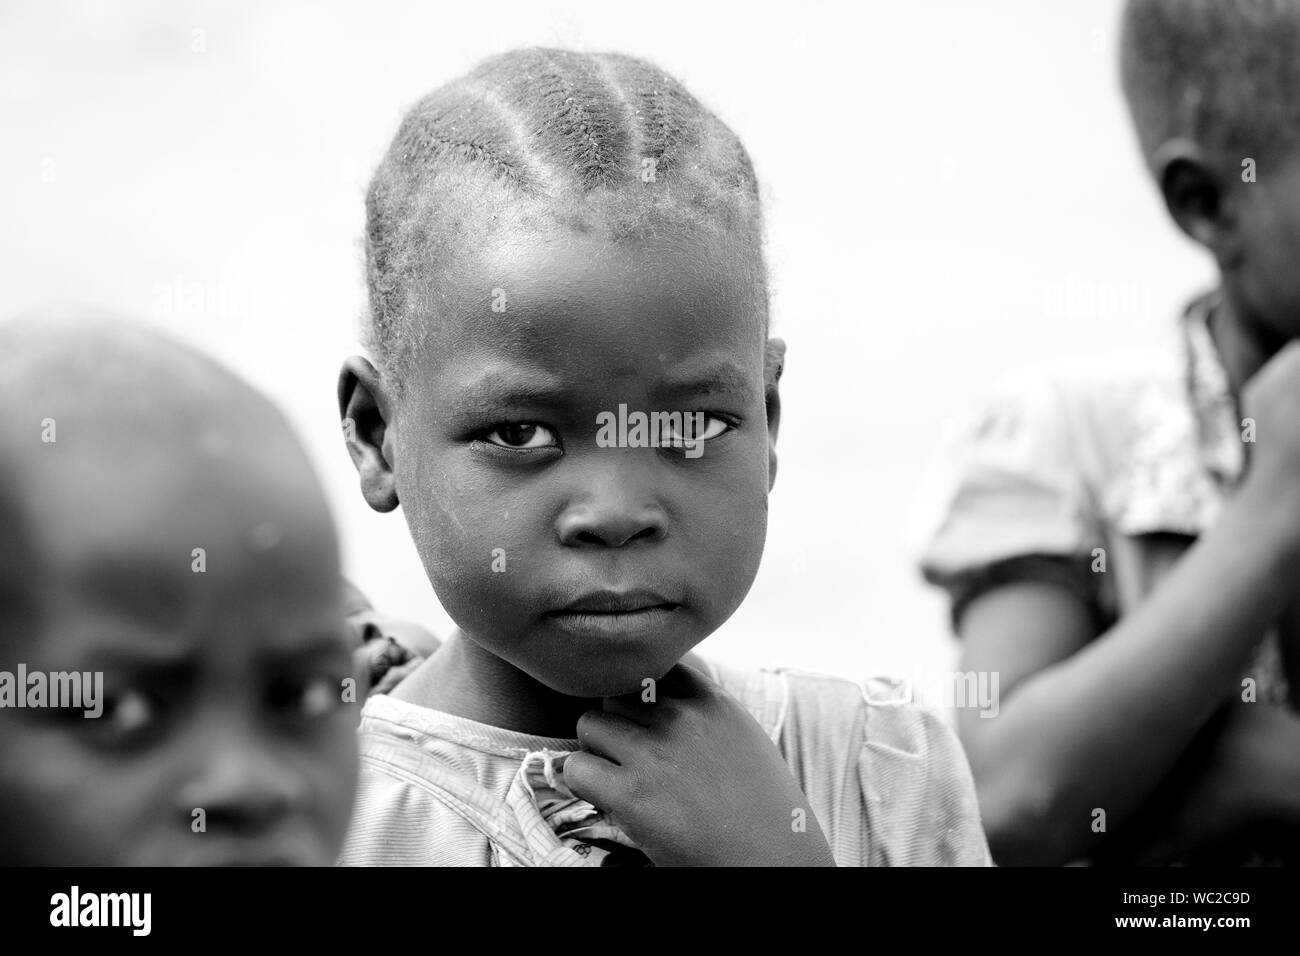 TORIT, SUD SUDAN-febbraio 20, 2013: una ragazza non identificato nel villaggio di Torit, Sud Sudan. La fame e la violenza è un problema costante in questo reg Foto Stock